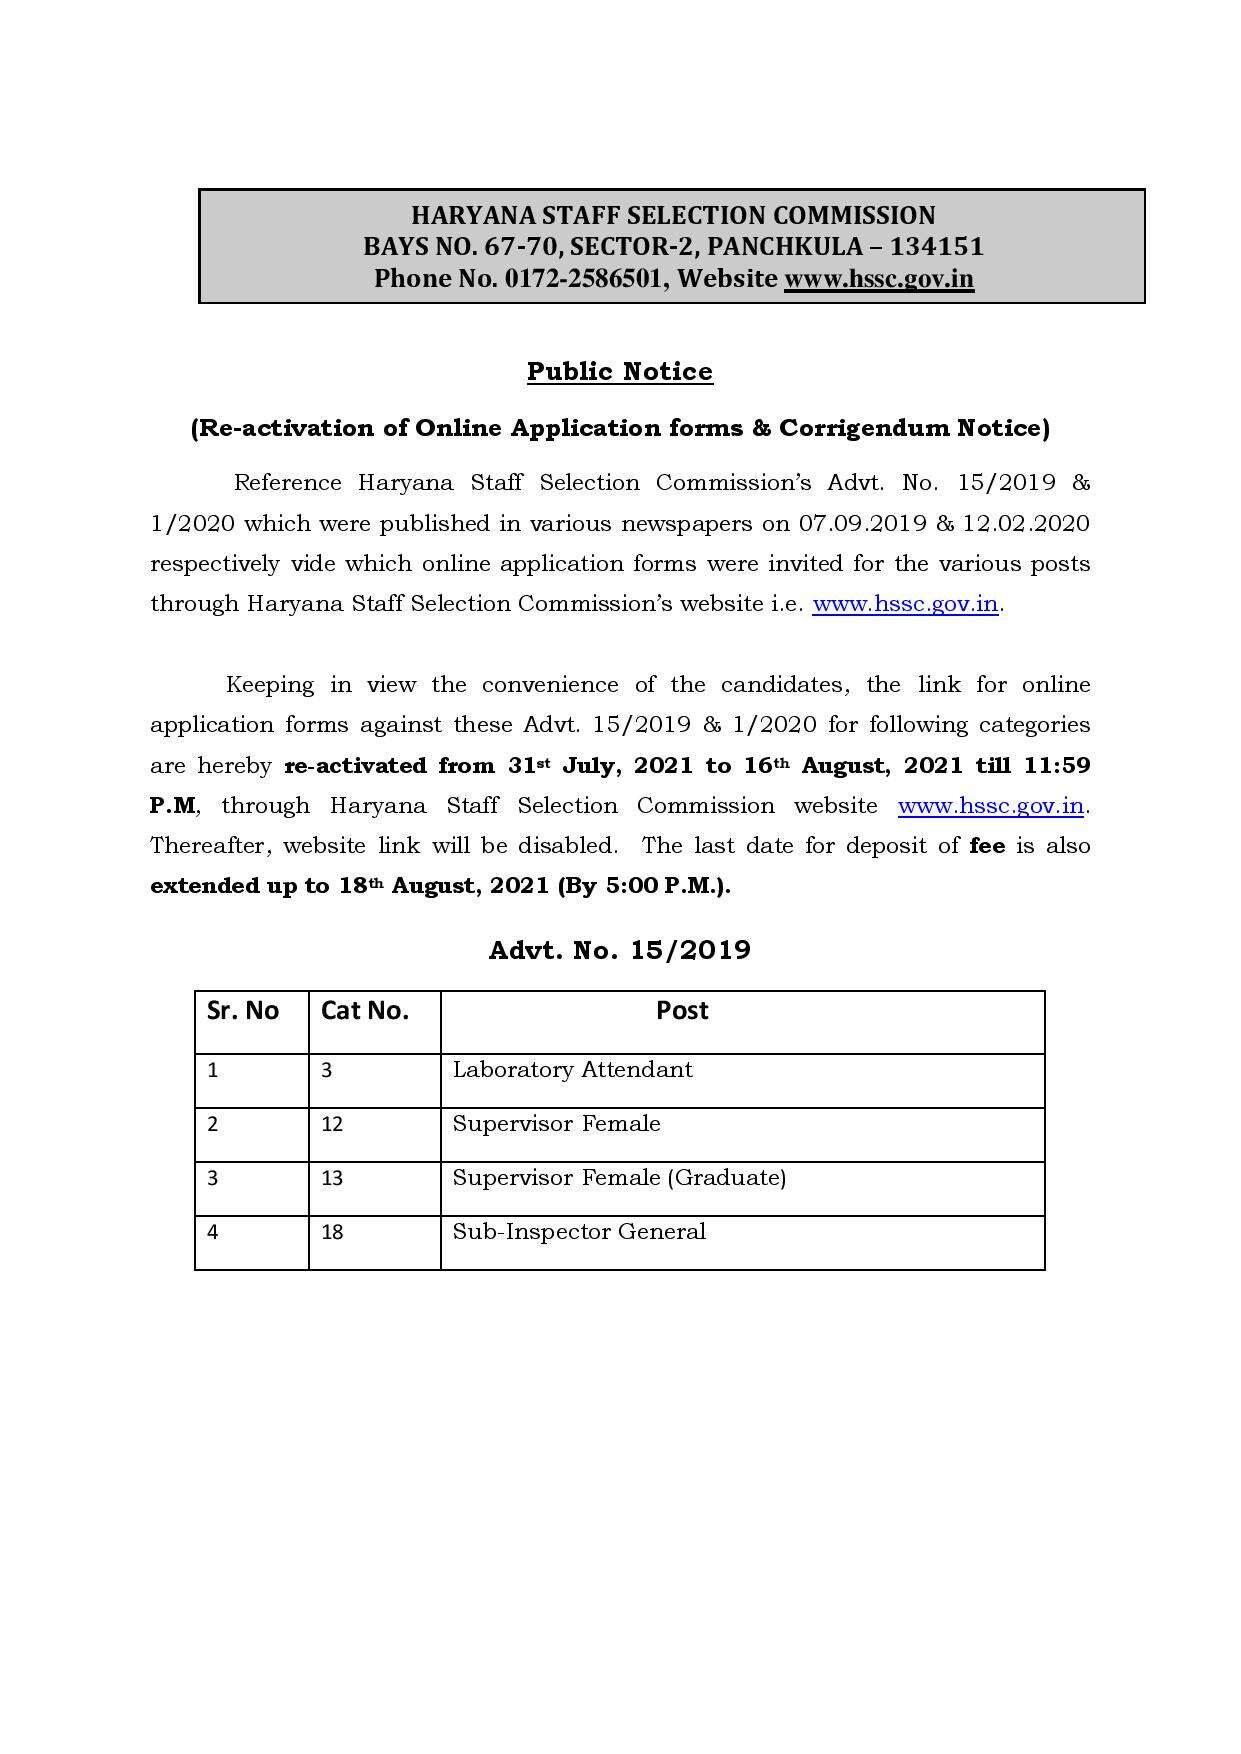 हरियाणा में बेरोजगारों के लिए खुशखबरी, HSSC ने सैंकड़ों पदों पर दोबारा विज्ञापन किया जारी